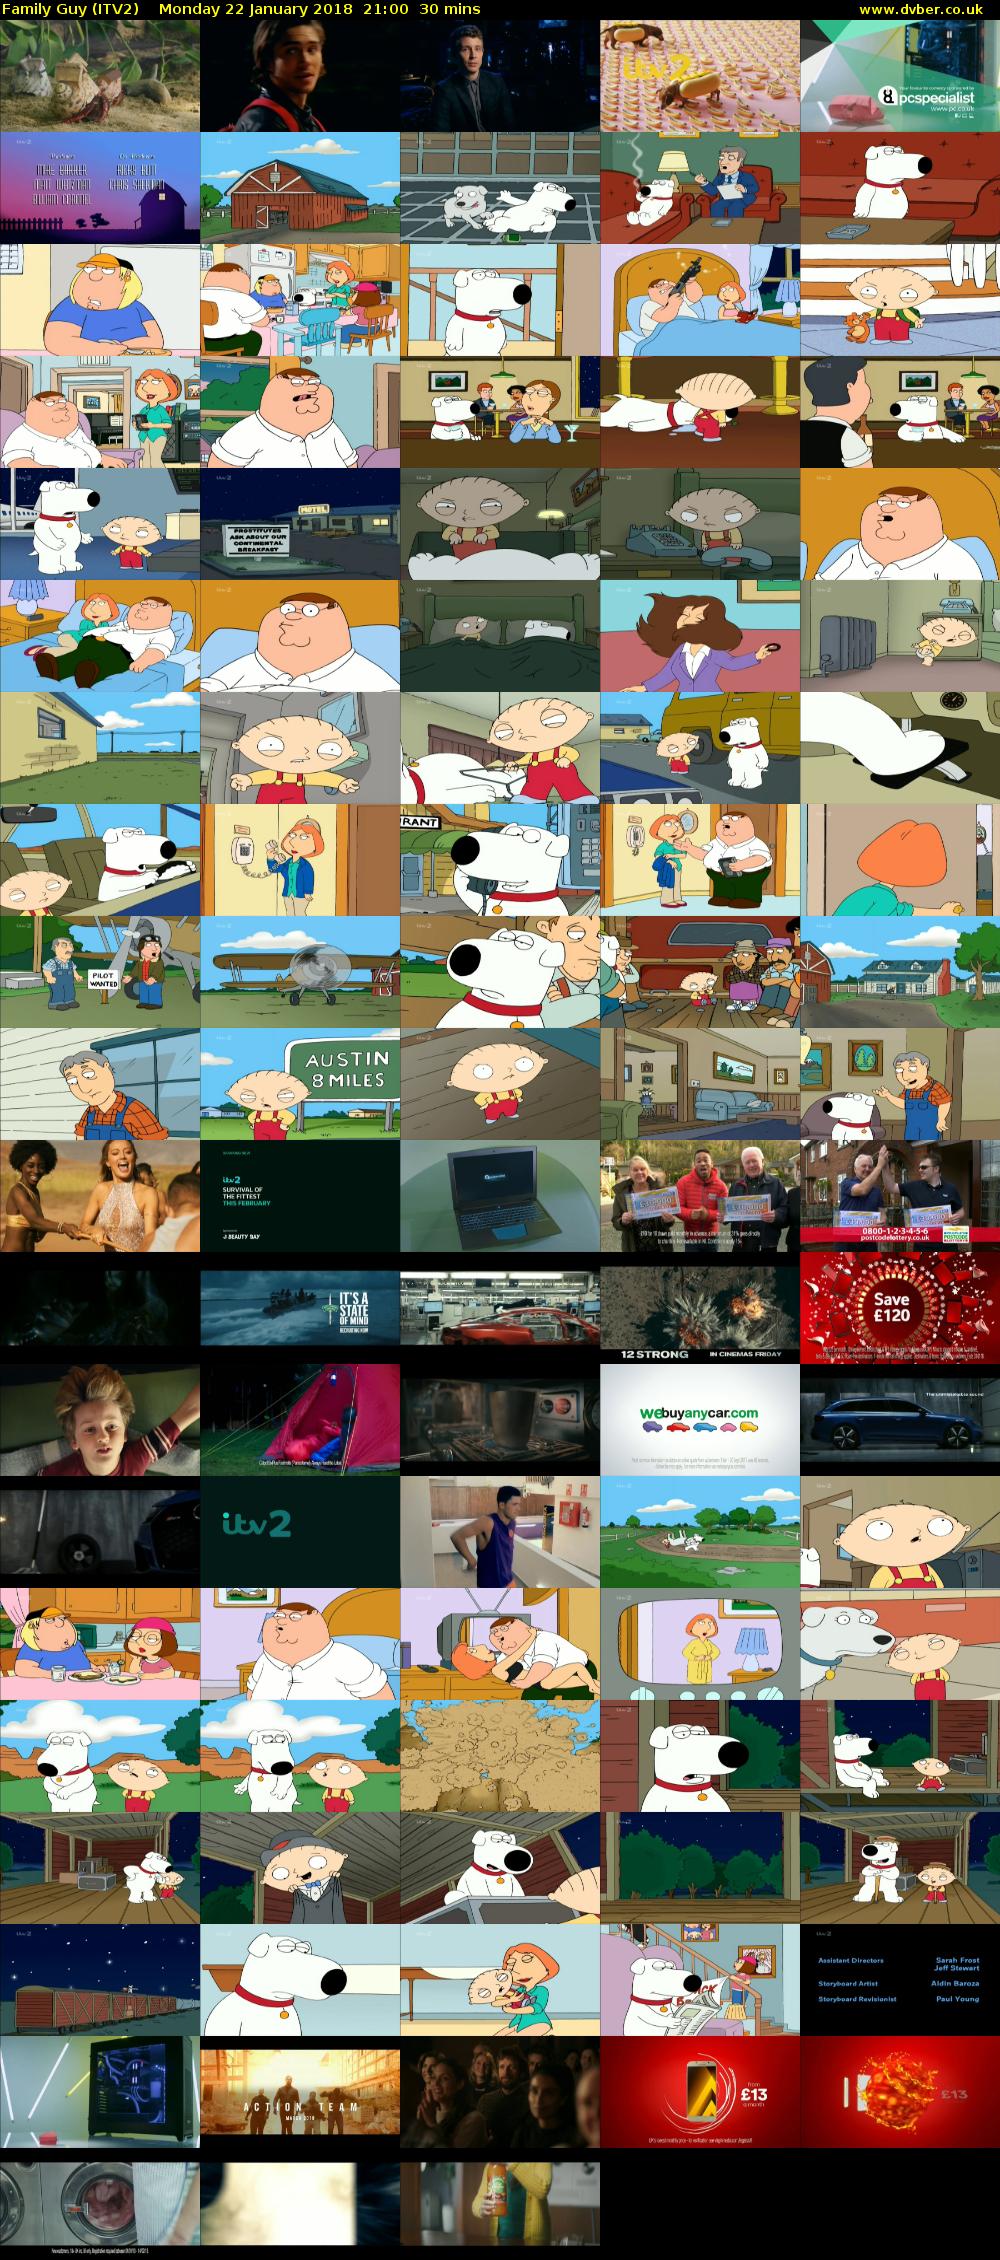 Family Guy (ITV2) Monday 22 January 2018 21:00 - 21:30